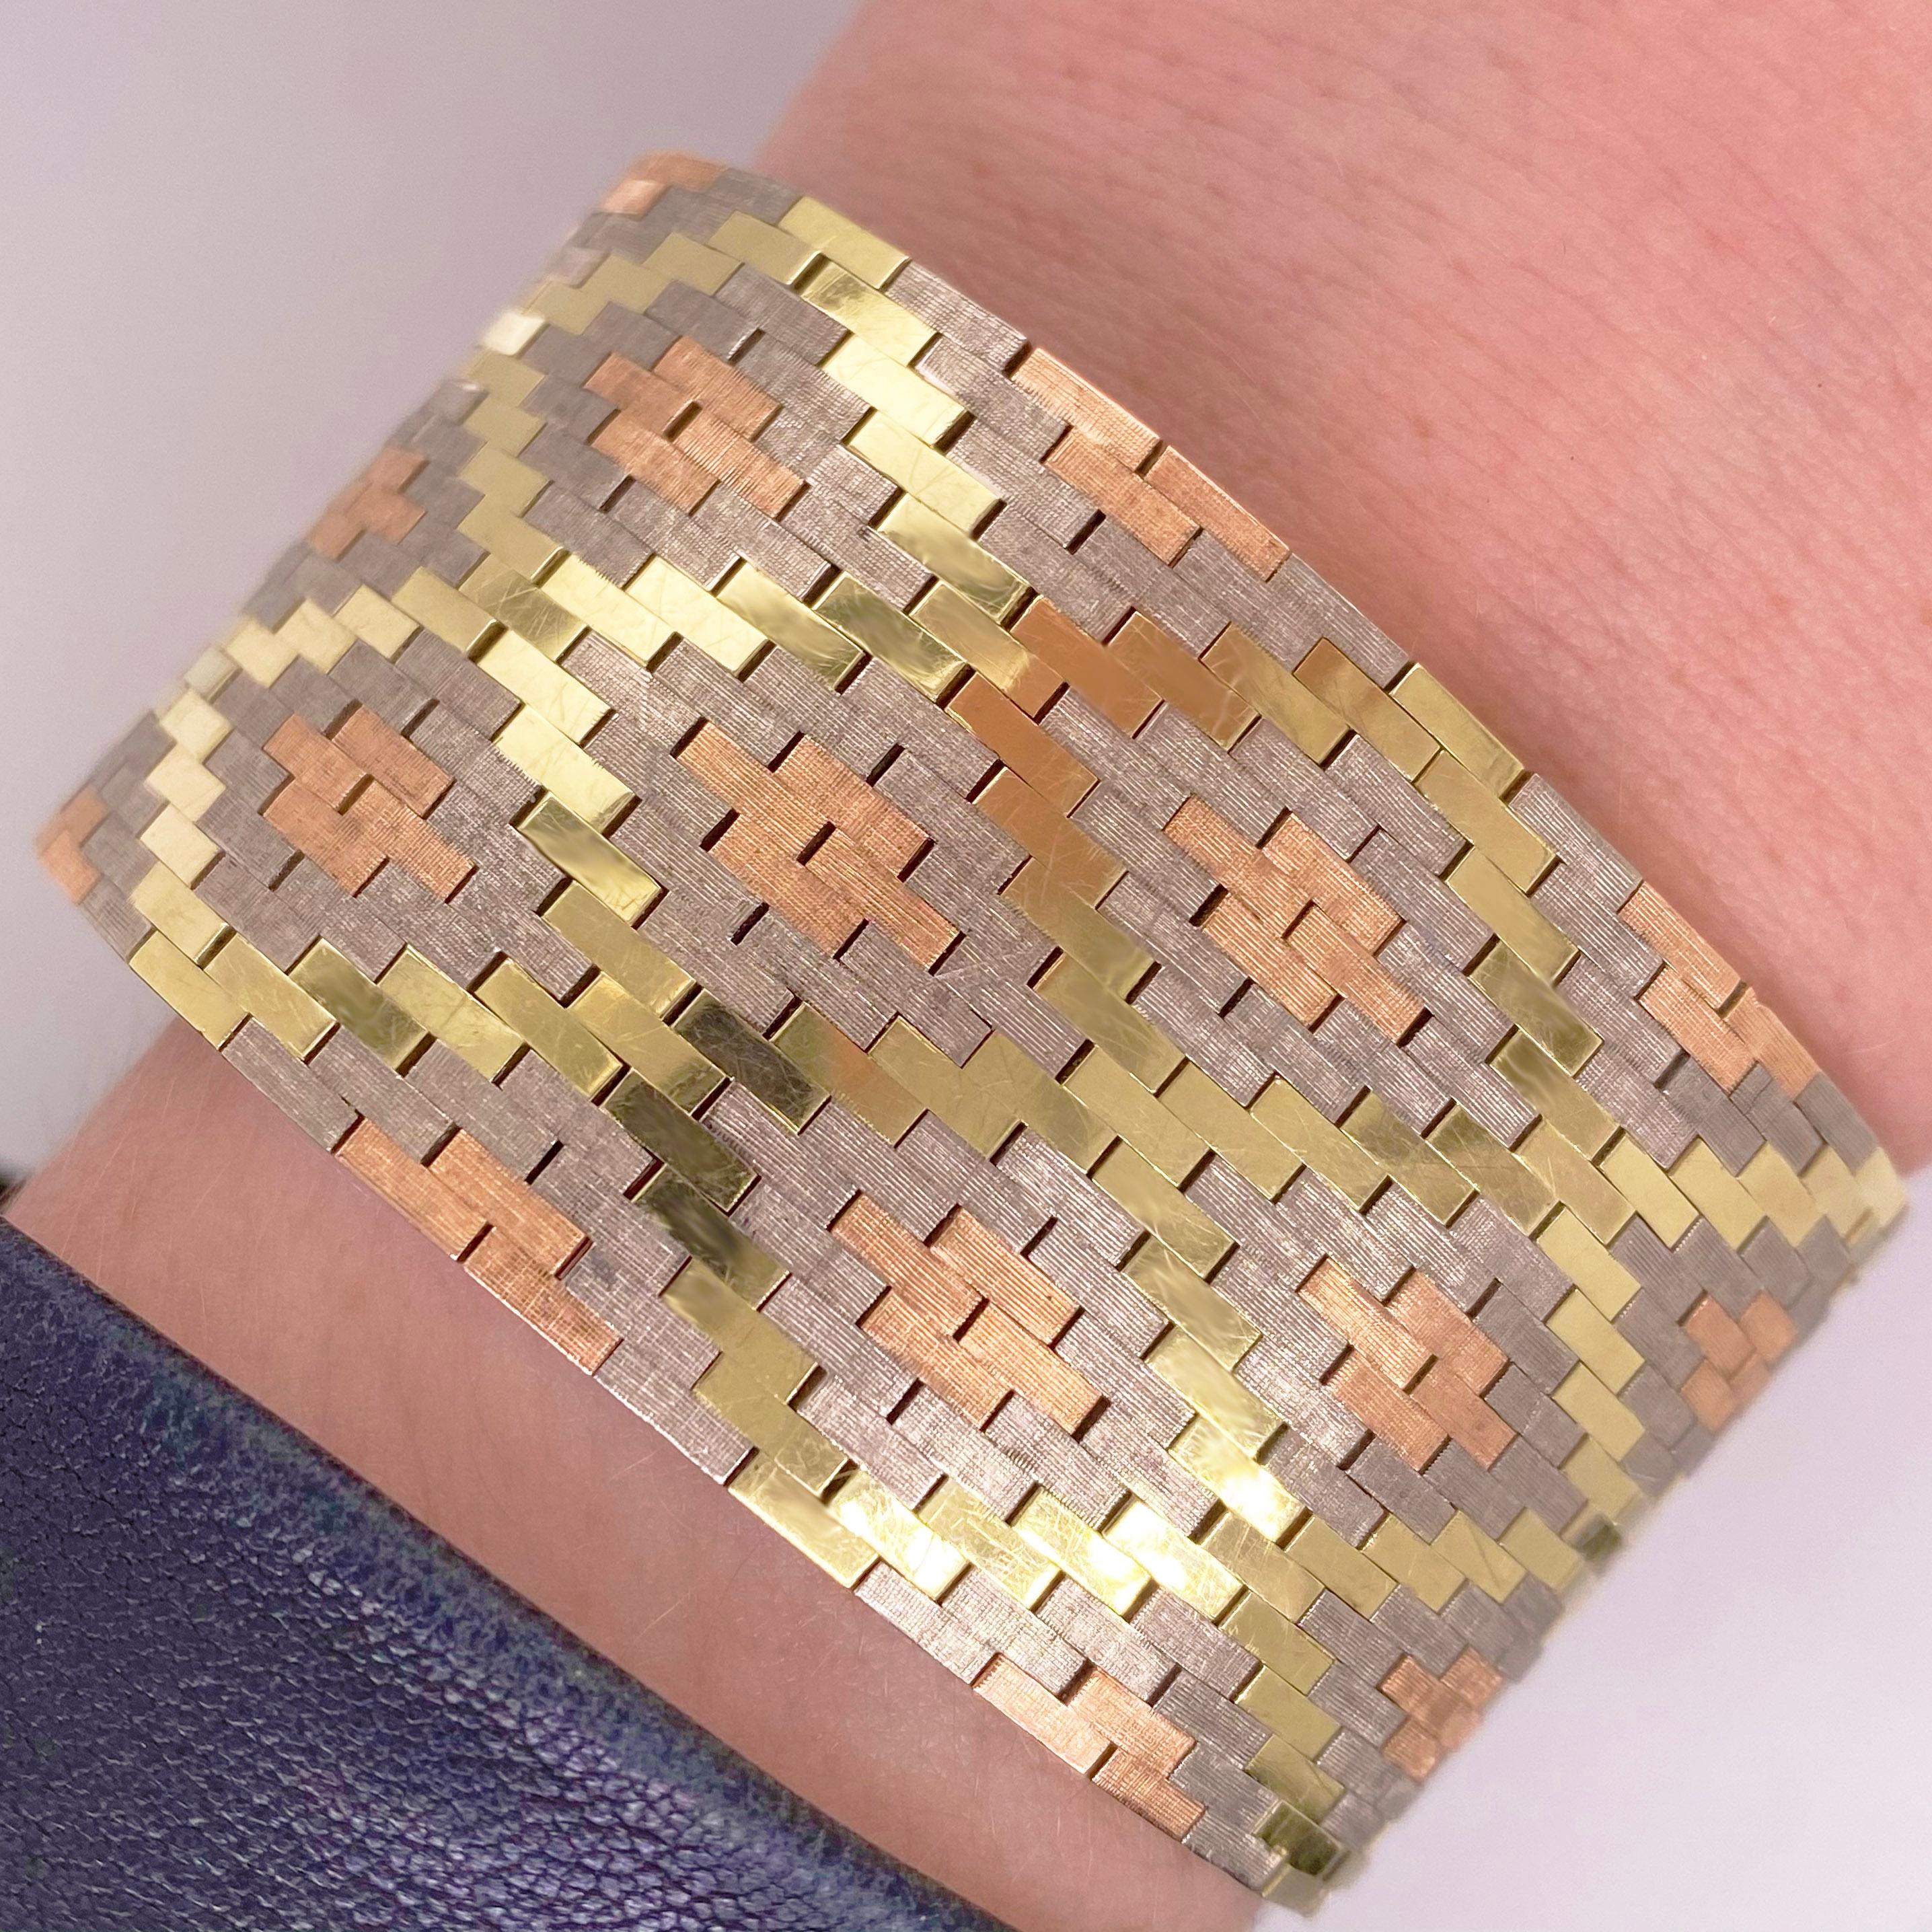  TRI-GOLD Estate Bracelet - hergestellt wie Butter!

Dieses Schmuckstück ist ein flexibles Armband, das sich perfekt an jedes Handgelenk anschmiegt, mit einem zeitlosen Muster, das auch heute noch in der Mode ist. Das Armband hat drei natürliche